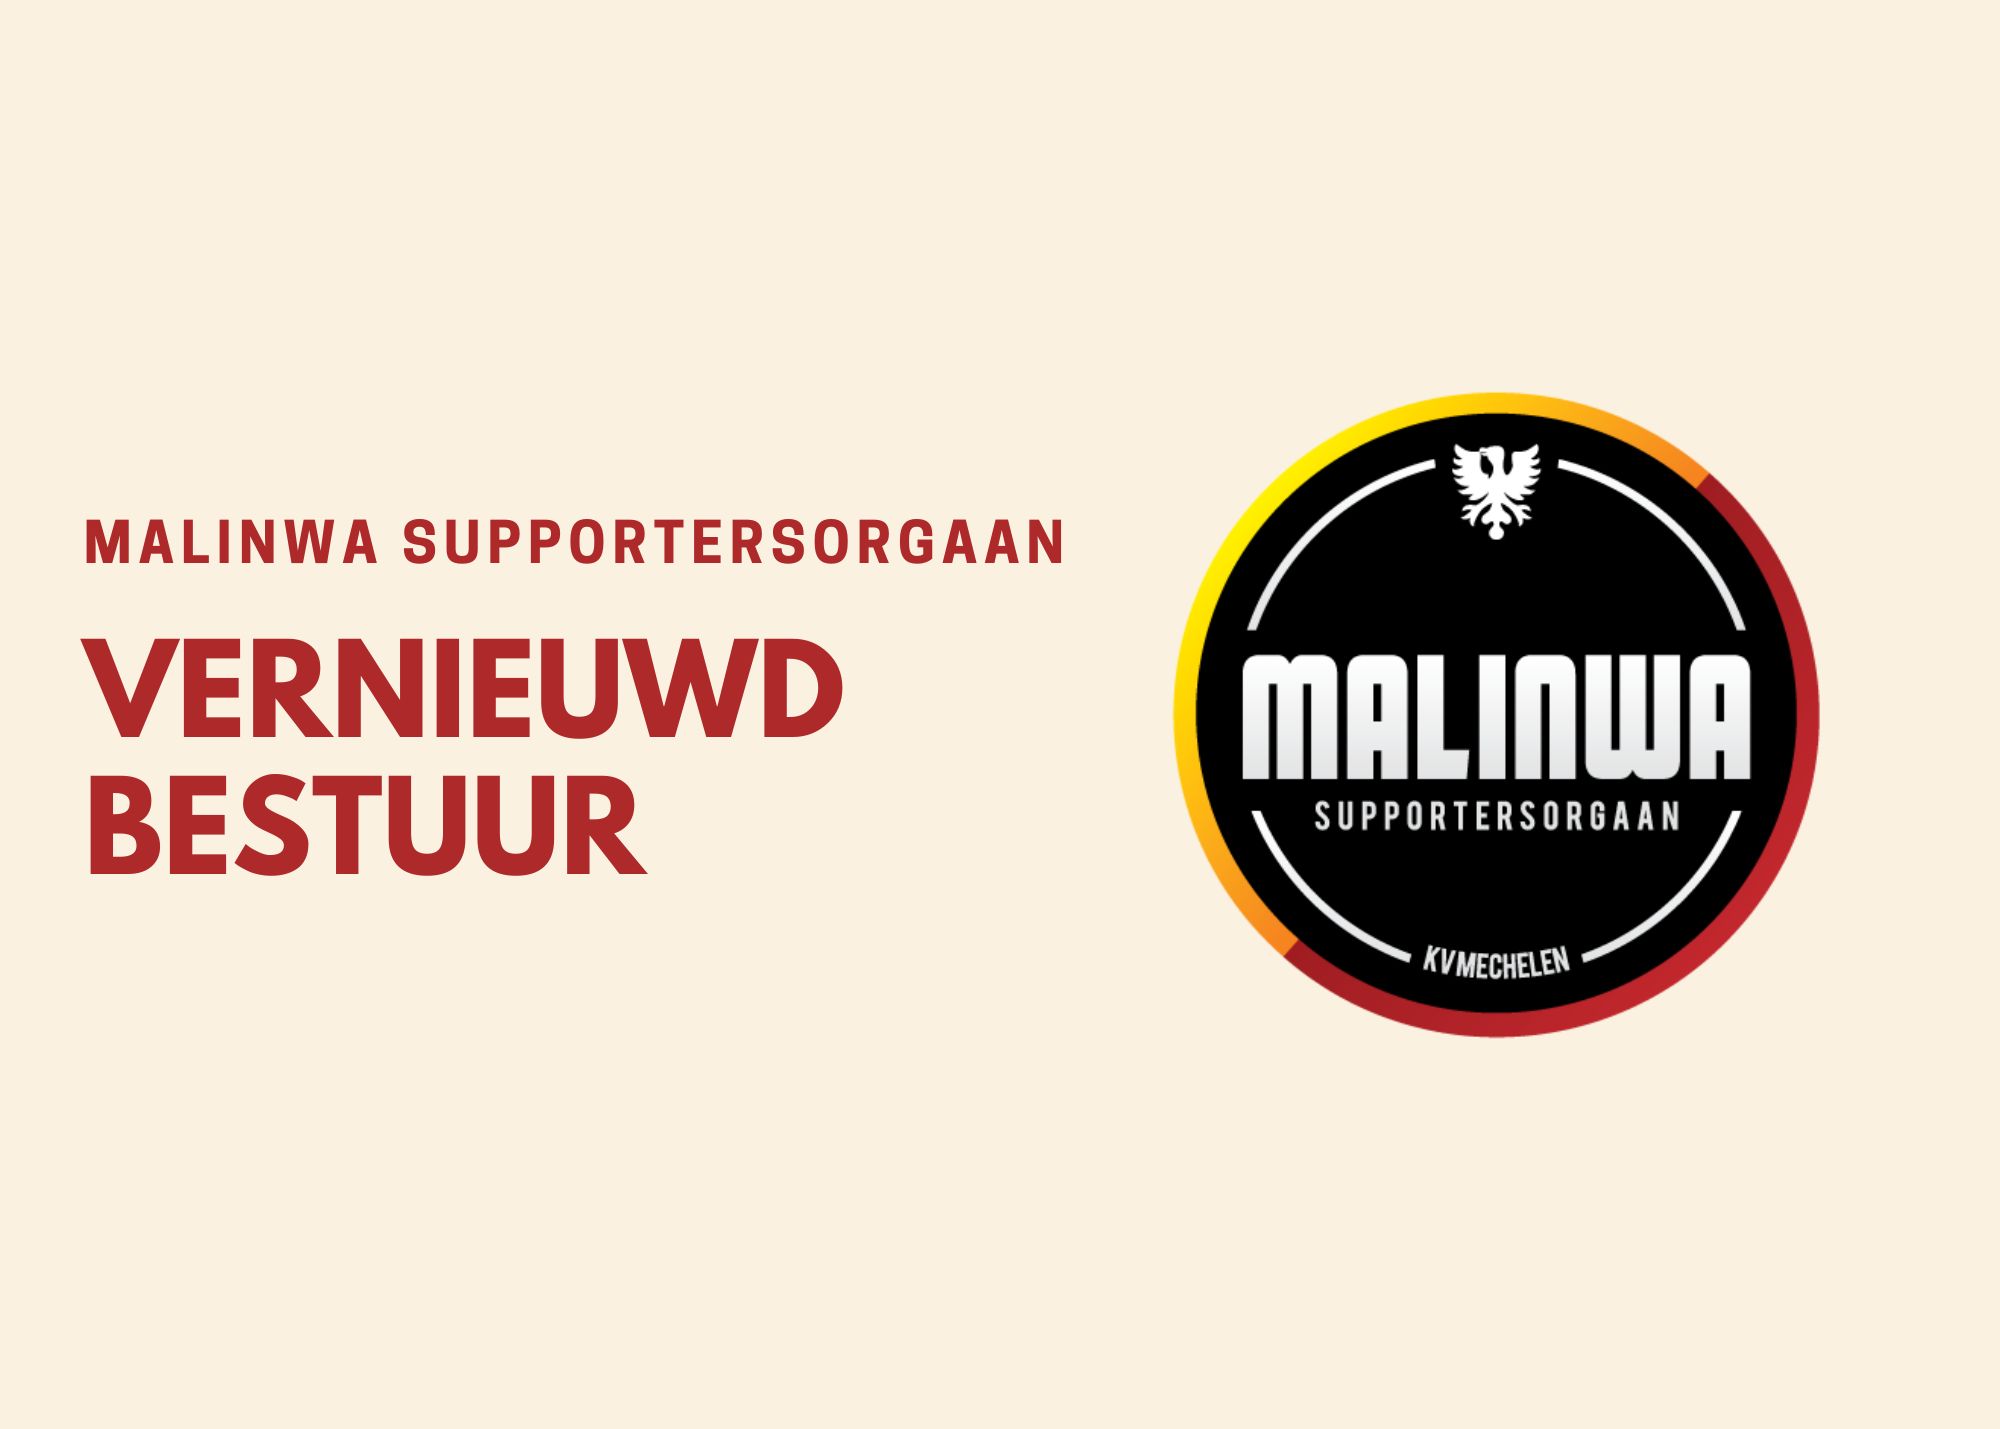 Vernieuwd bestuur Malinwa Supportersorgaan